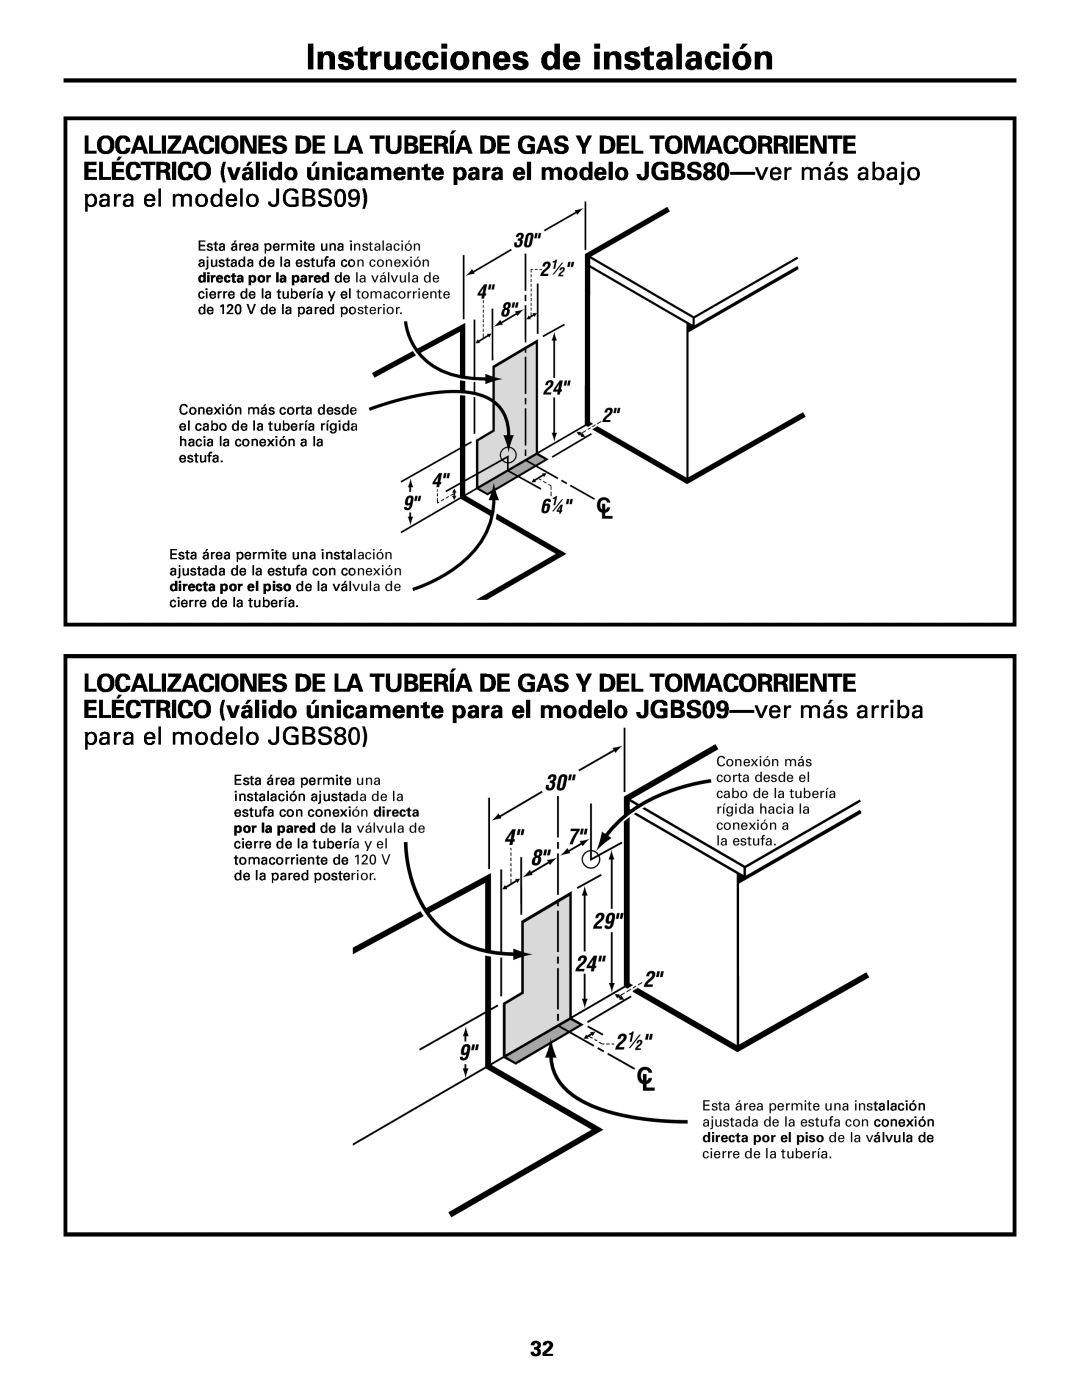 GE JGBS80 installation instructions Instrucciones de instalación, de la pared posterior 